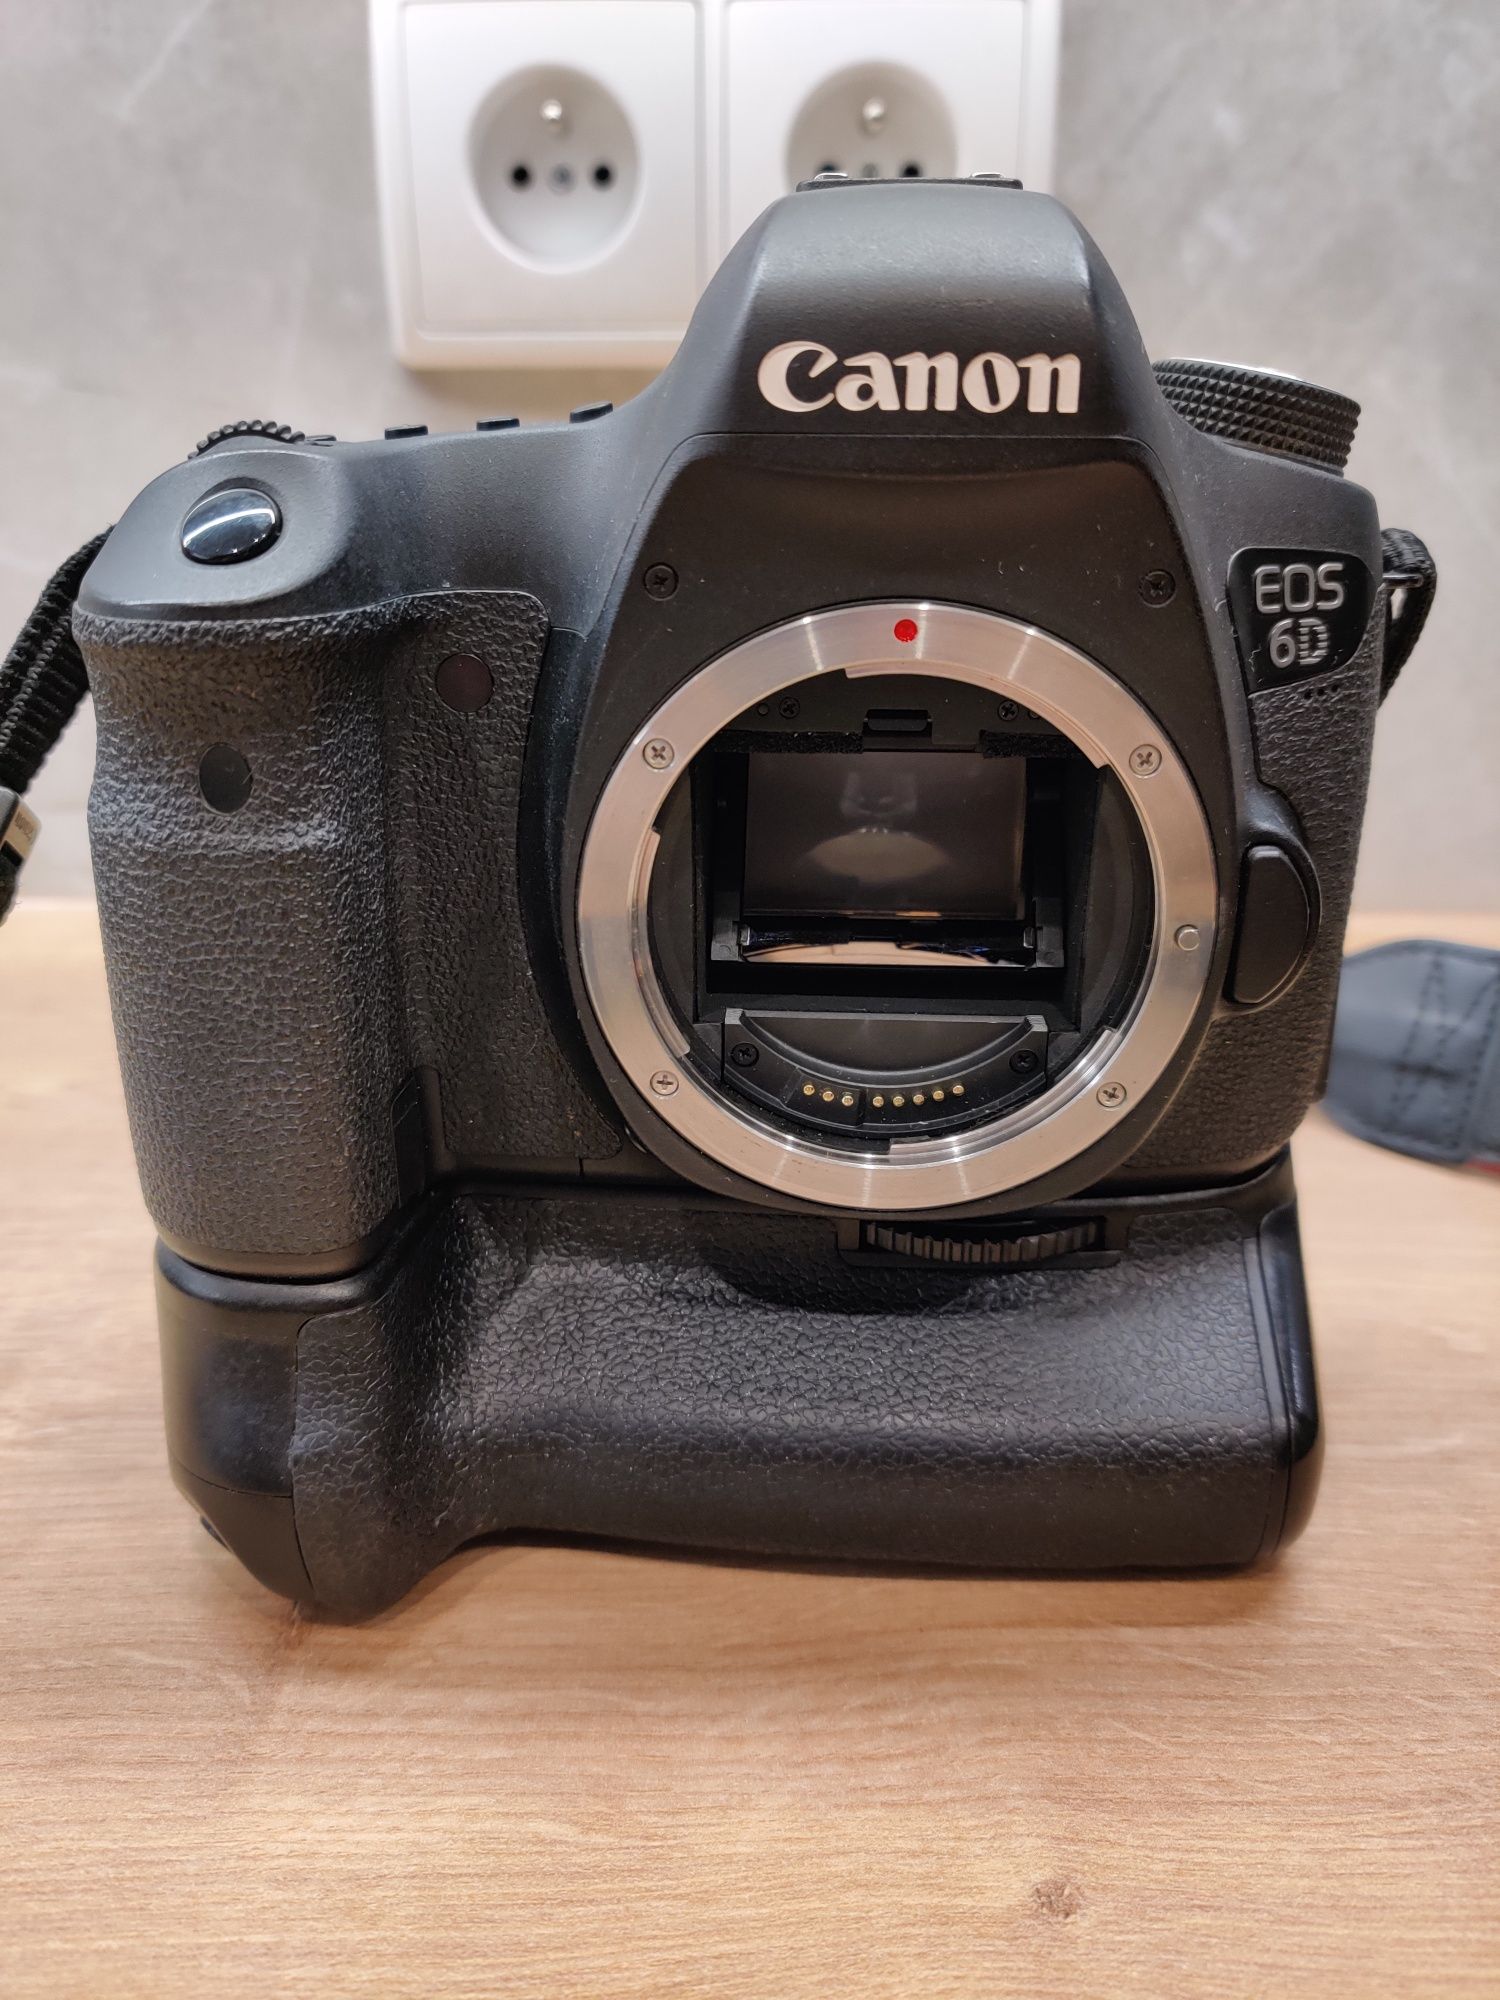 Aparat Lustrzanka Canon 6D, pełna klatka FF 65000 duży zestaw